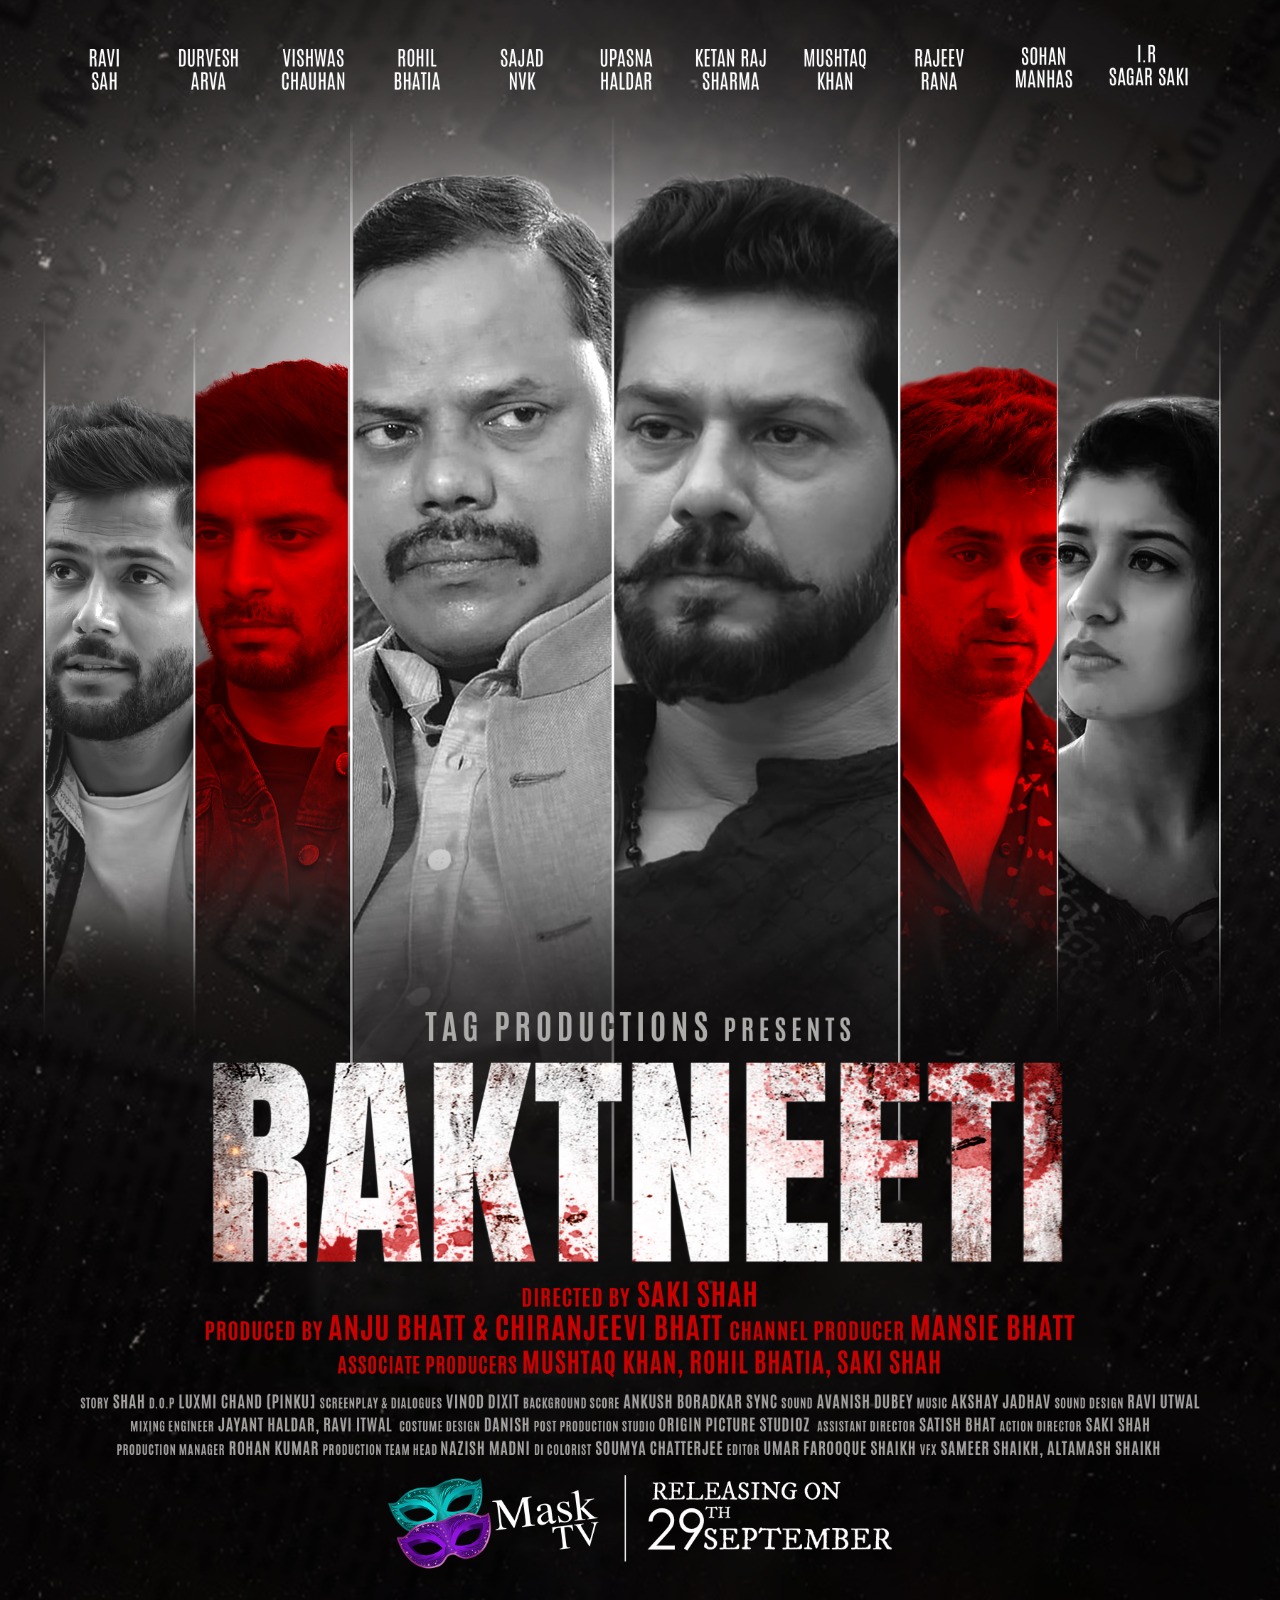 Raktneeti: A Web Series Debuting on Mask TV OTT This Ganeshotsav"